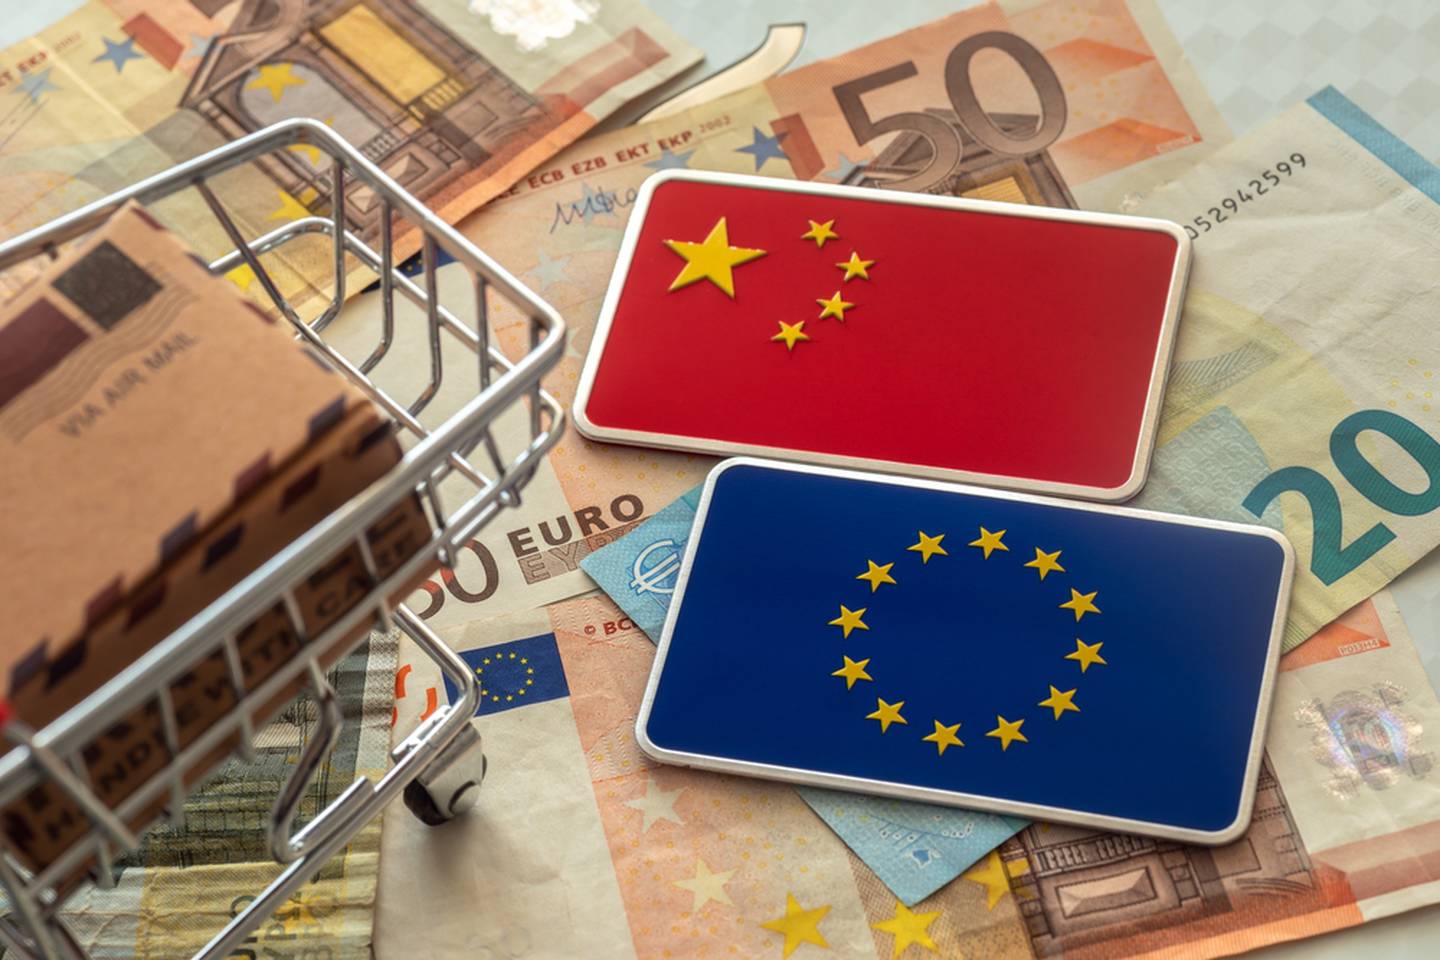 Banderas de China y Europa junto con dinero y un carrito de compras